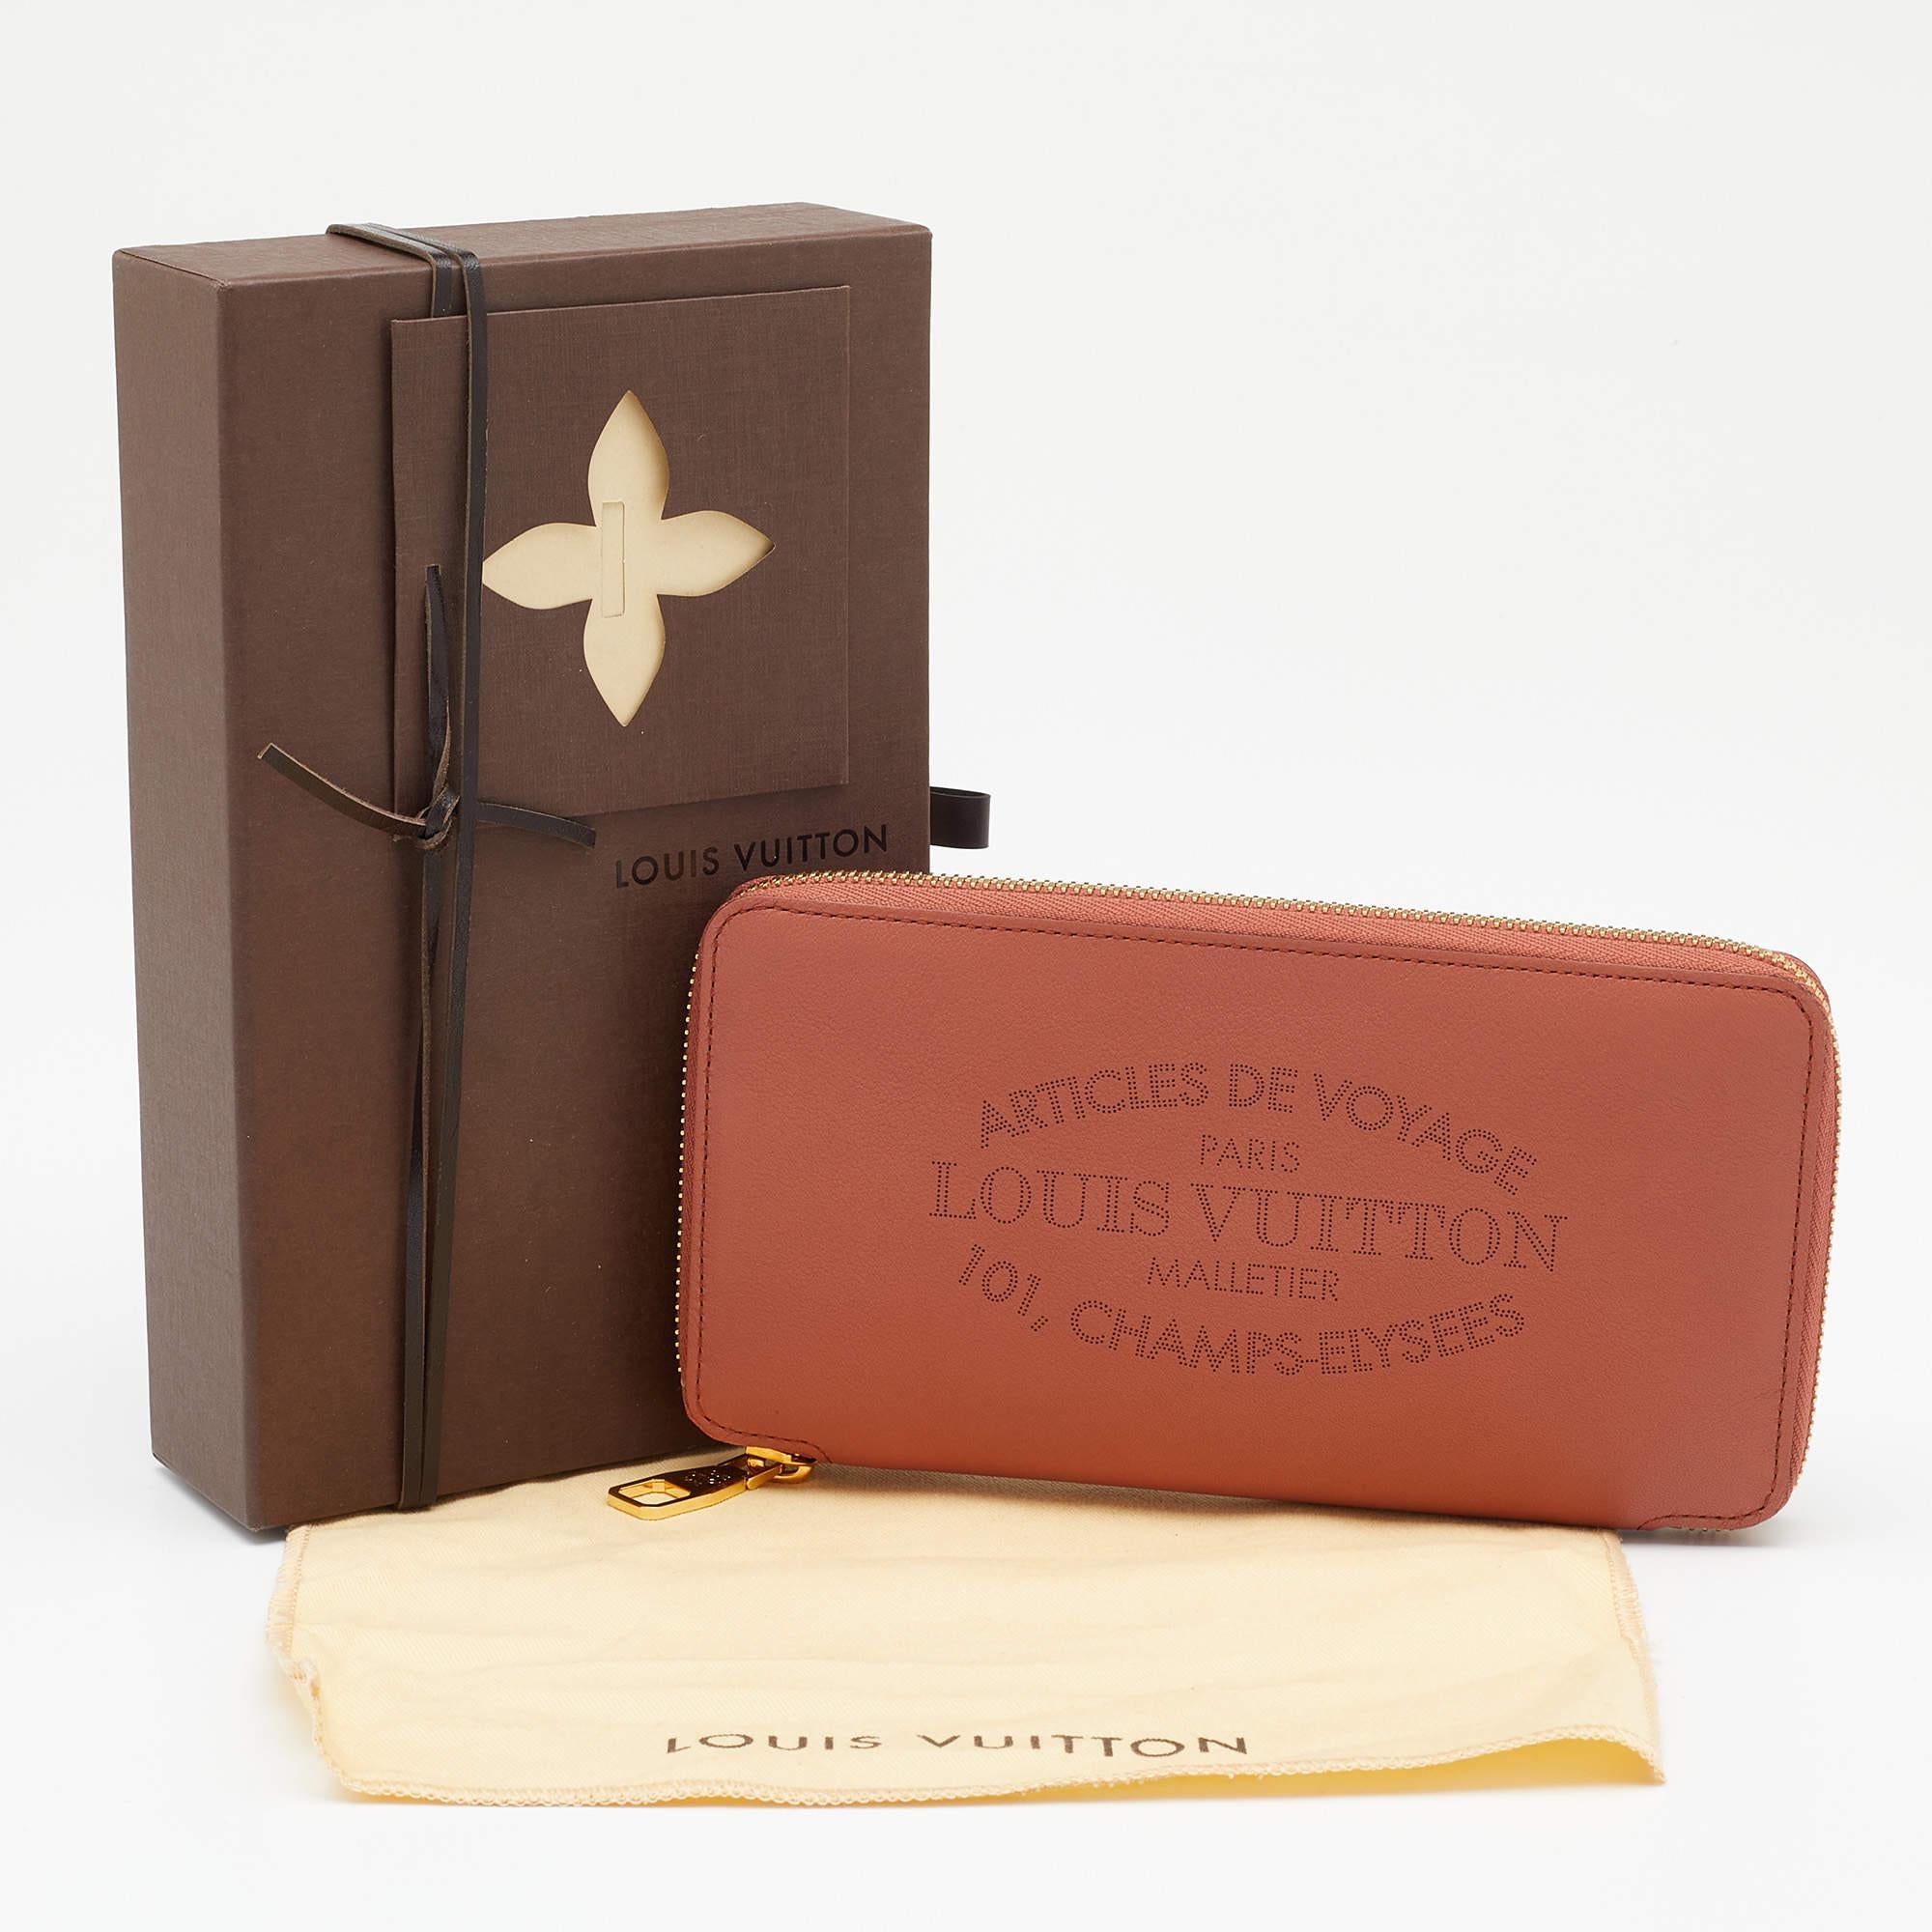 Louis Vuitton Brick Red Leather Article De Voyage Zippy Wallet 7